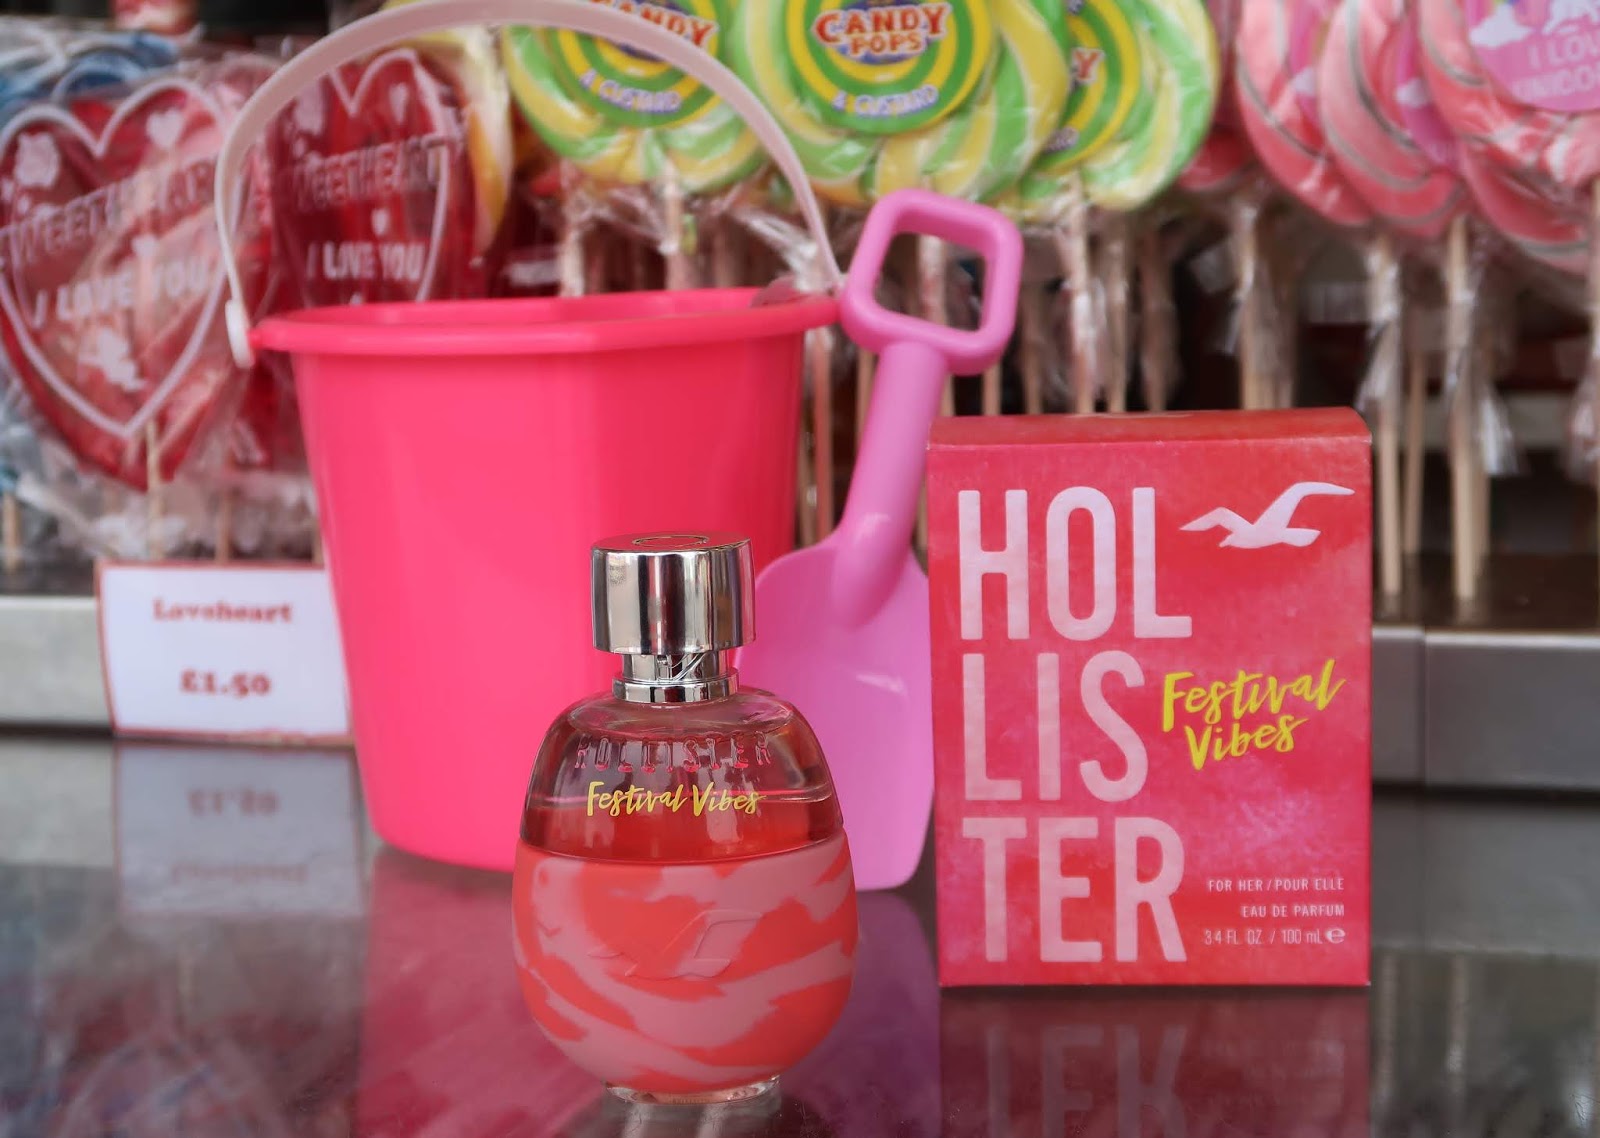 Hollister Festival Vibes Fragrance Review by UK Perfume Blogger WhatLauraLoves